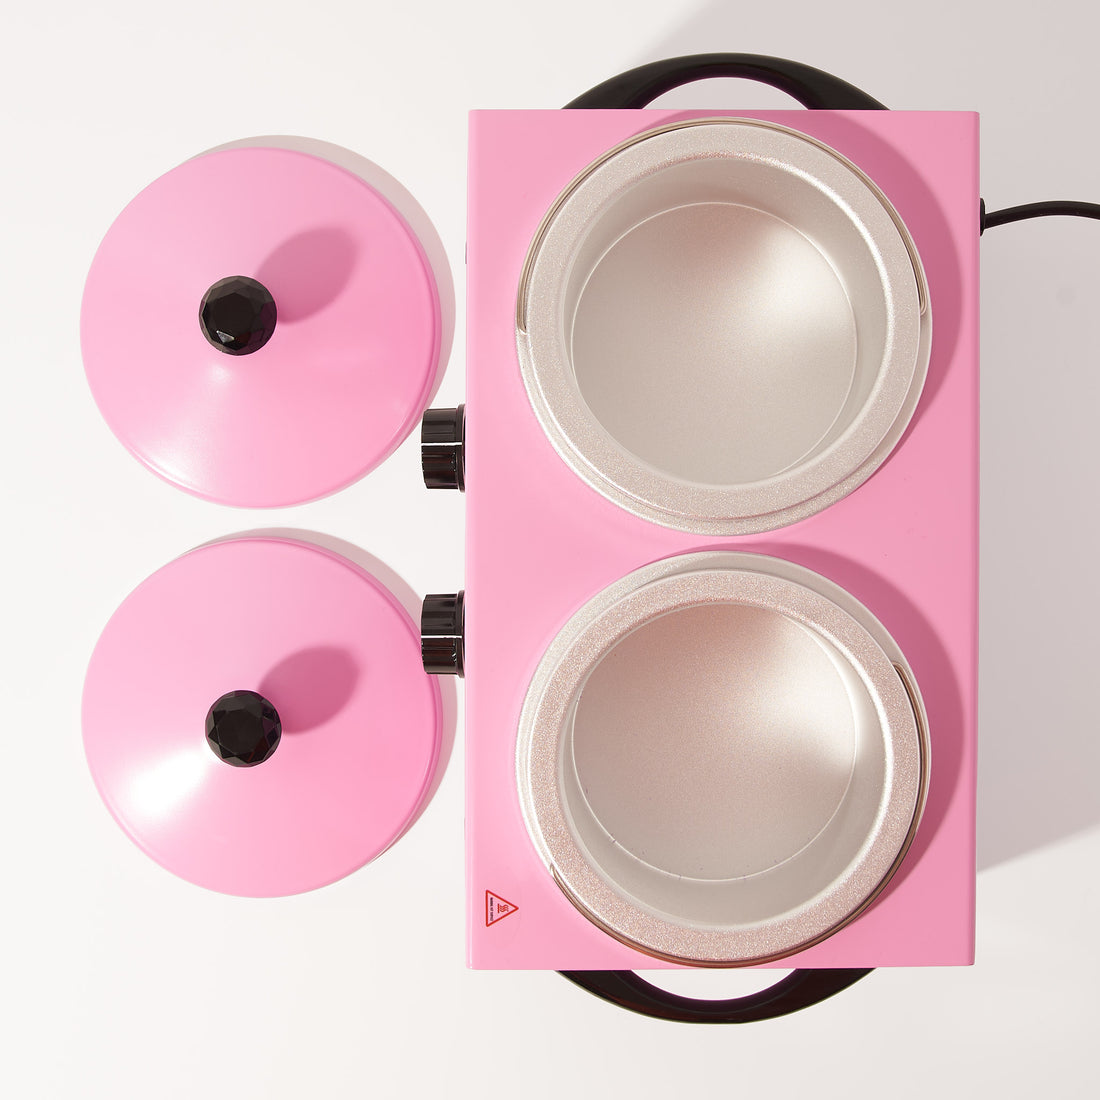 Limited Edition Zandi Land Double Wax Warmer - Pink with Crystal Knobs –  Zandi Land Beauty